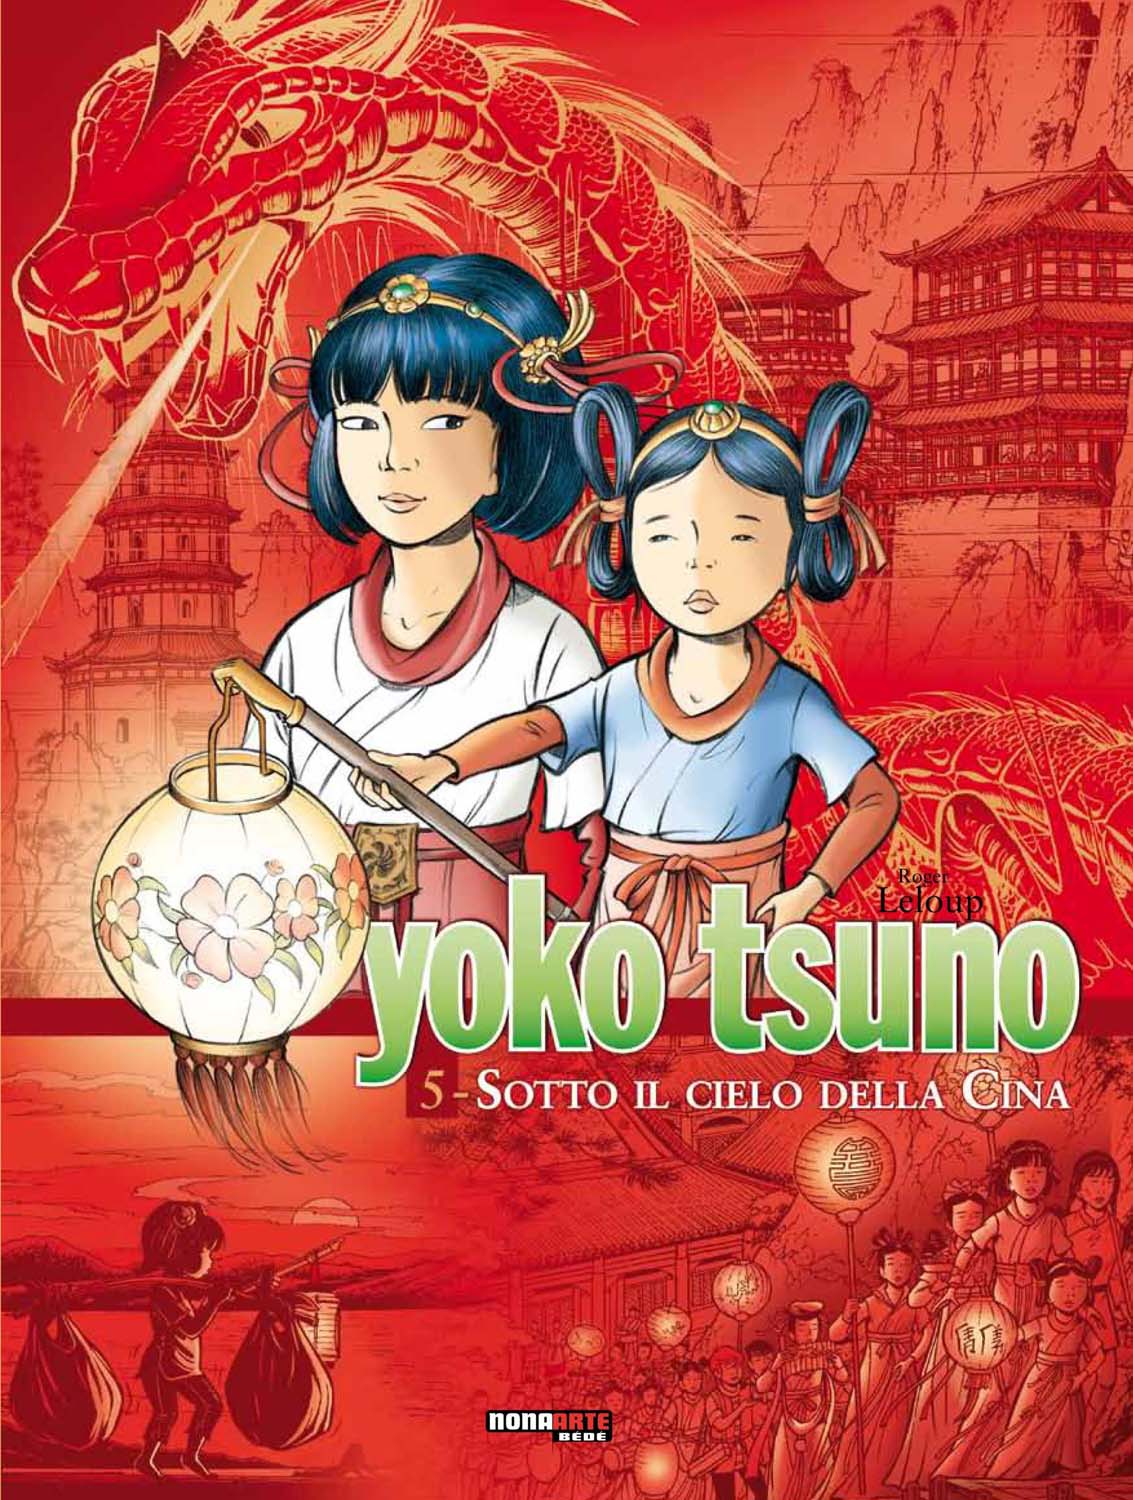 Libri Yoko Tsuno - L'Integrale Vol 05 NUOVO SIGILLATO, EDIZIONE DEL 20/10/2016 SUBITO DISPONIBILE